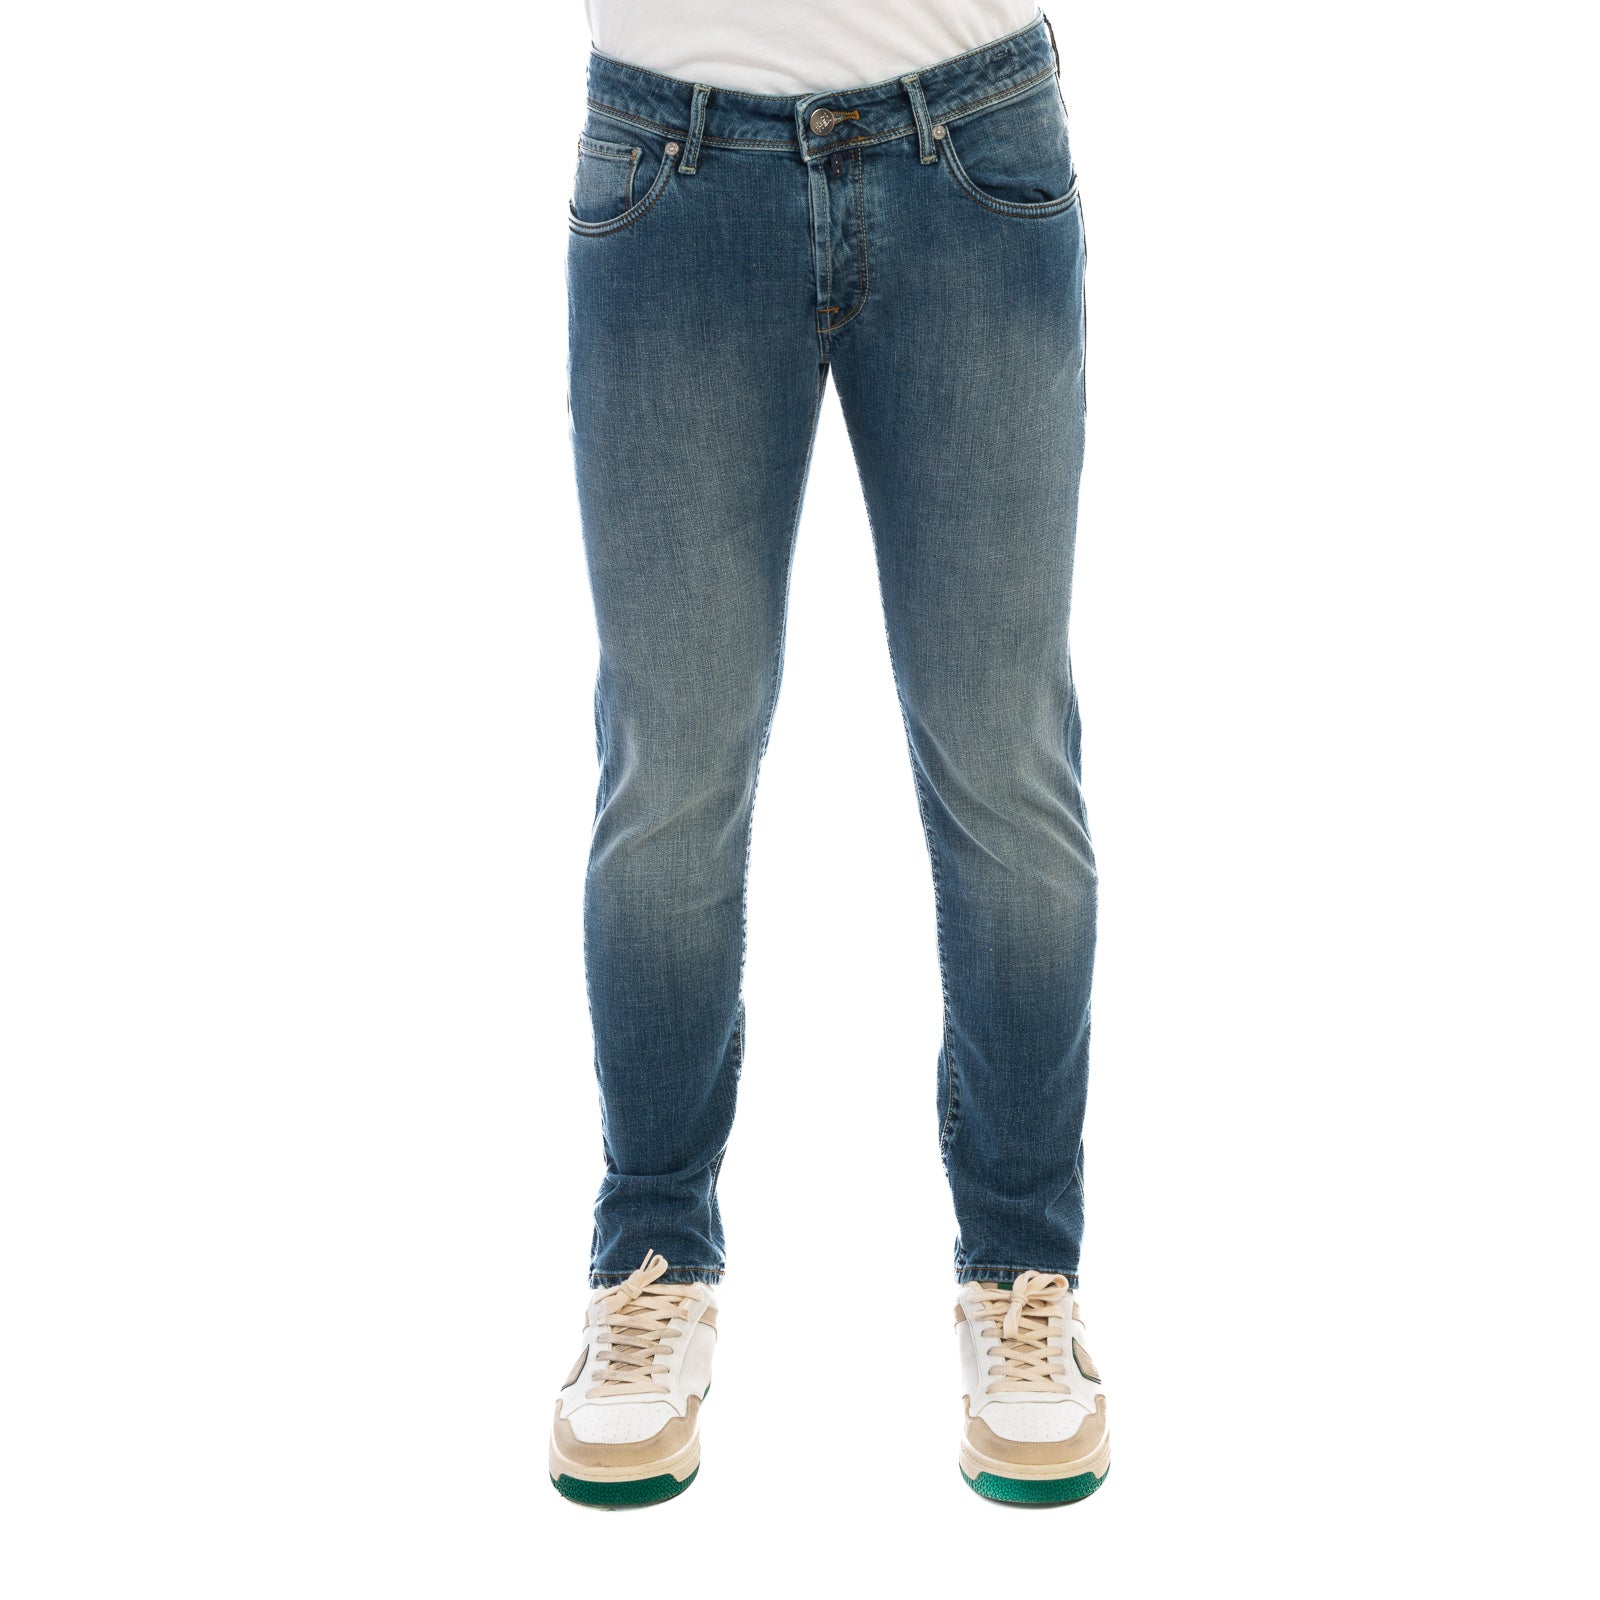 Jeans INCOTEX
Denim